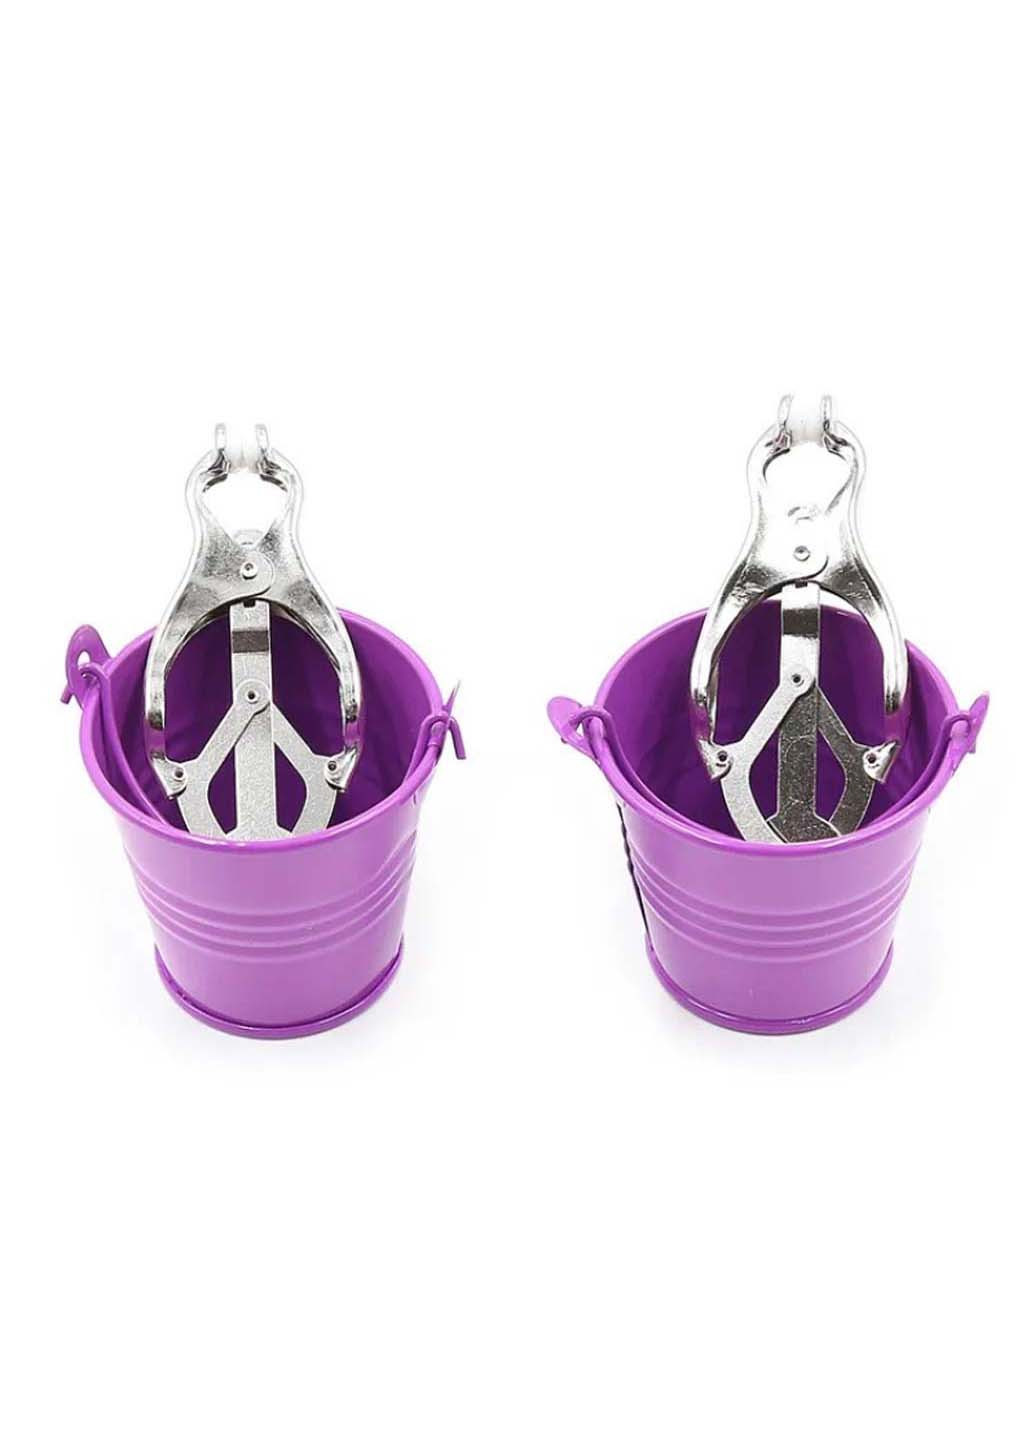 Зажимы для сосков с ведерками для жидкости Bucket Nipple Clamps Purple Bdsm4u (277229308)